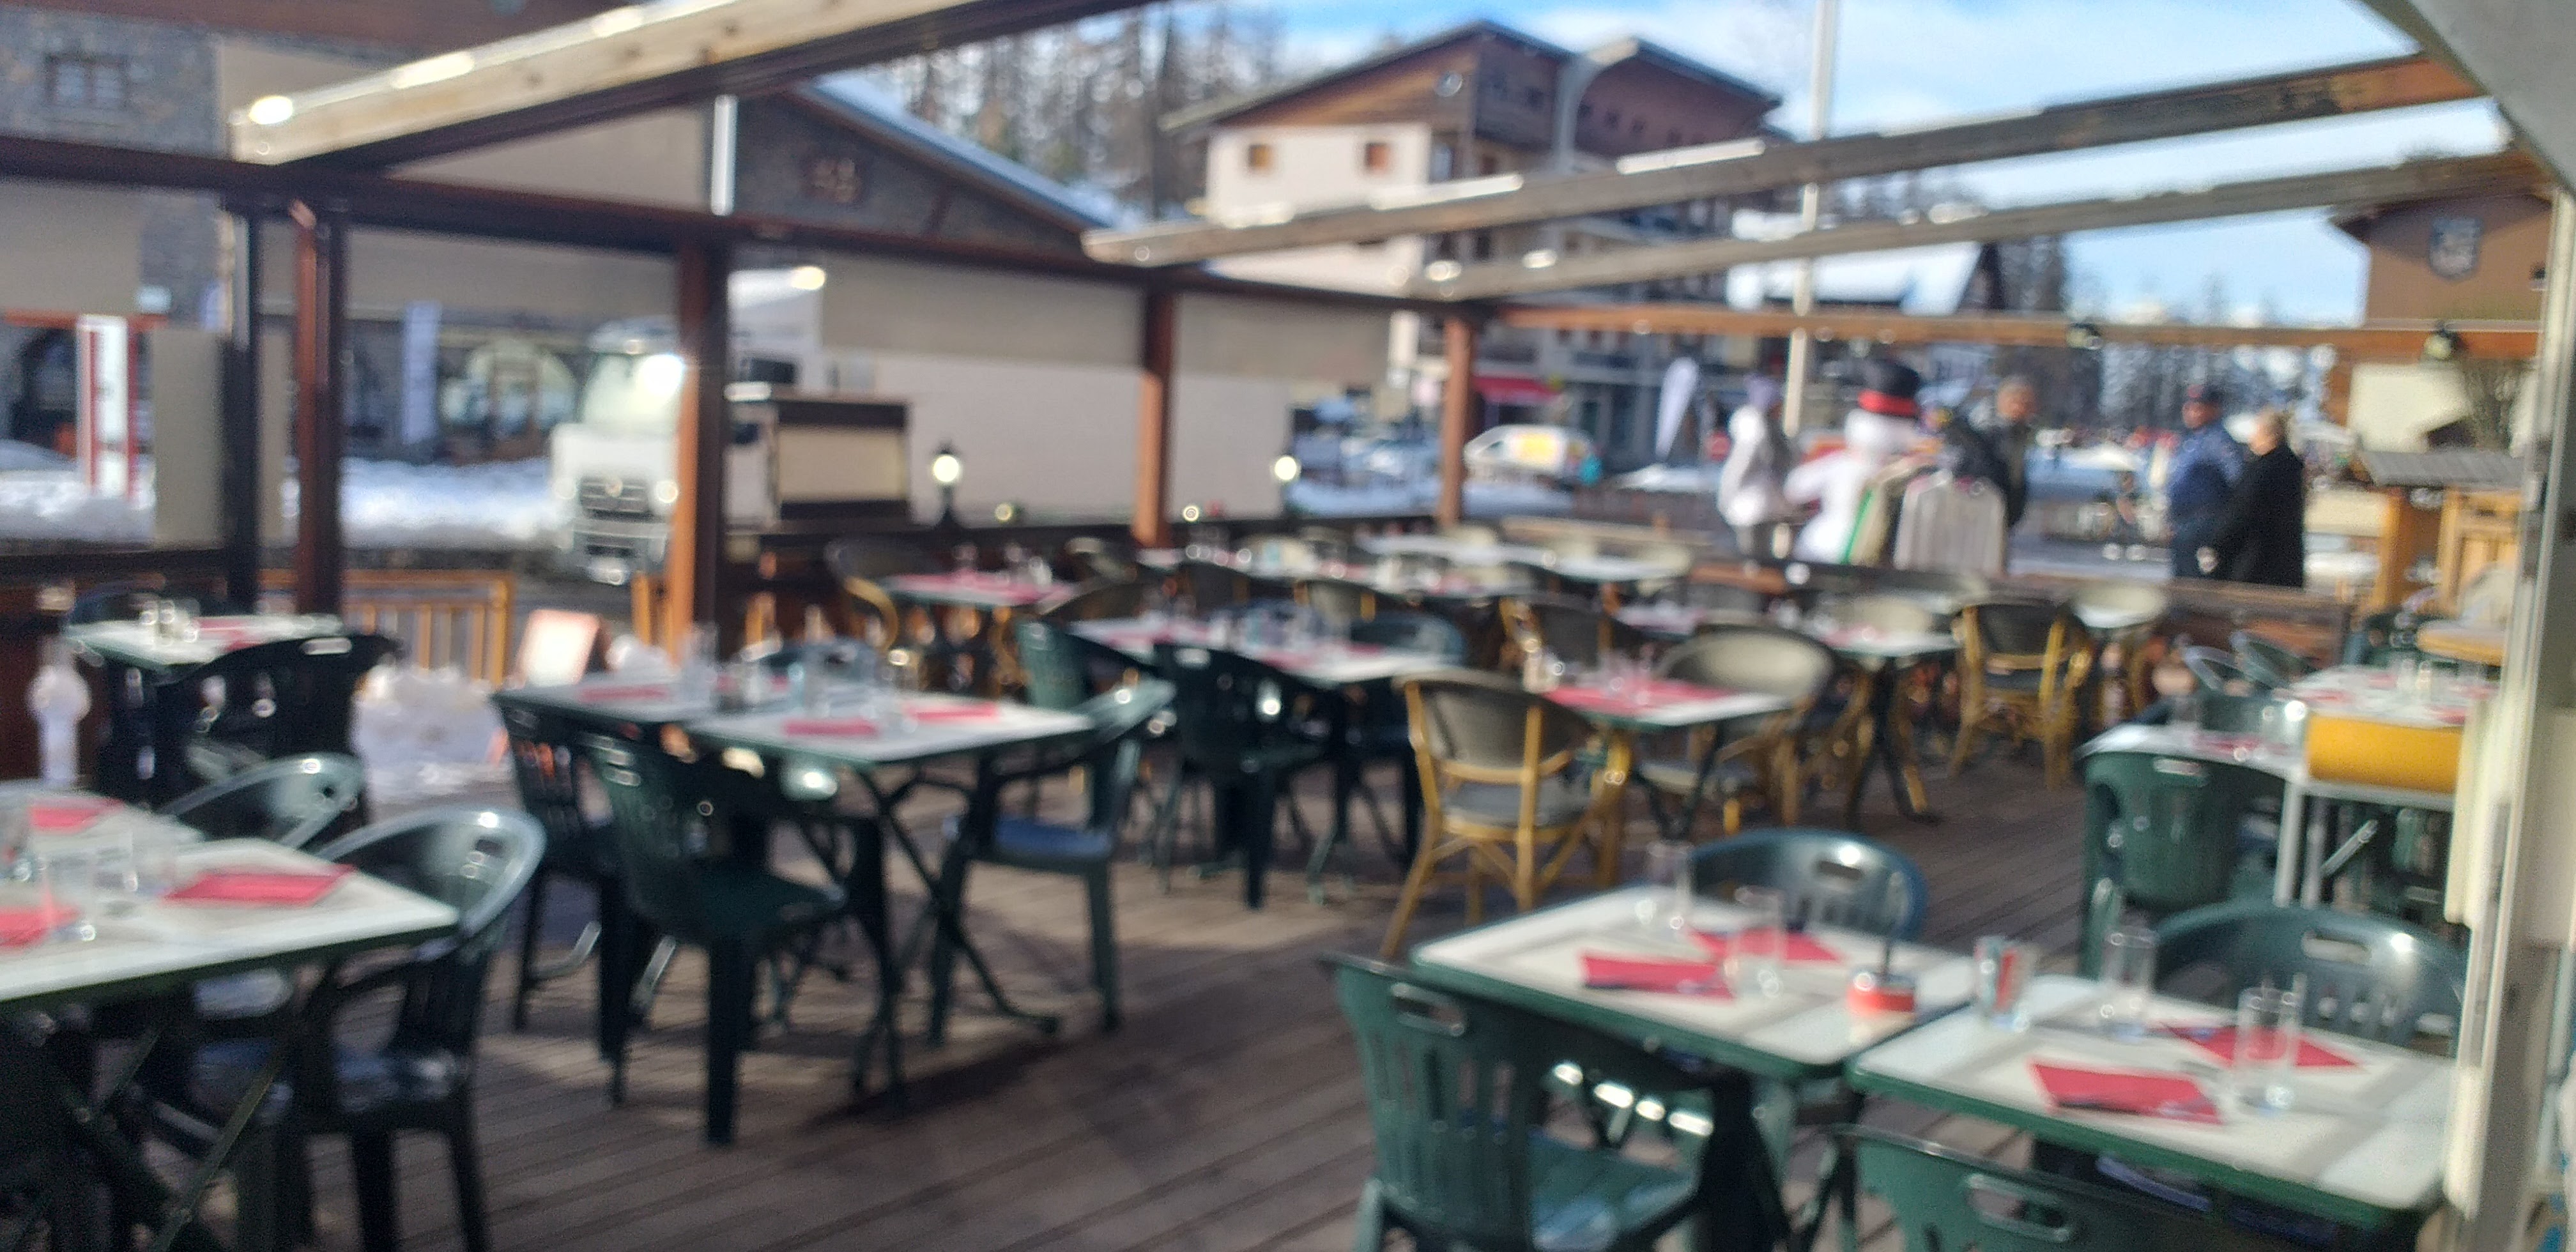 Bar Restaurant, Pizzeria,  station de ski 
Alpes du Sud, Valberg.
Exploitable toute l année
Clientèle toutes saisons
En plein centre de la station
Environ 200m2 + grande terrasse privative, plein sud,  sous sol.
Grande cuisine
60 couverts intérieur
80 couverts exterieur
Affaire nouvelle à développer.